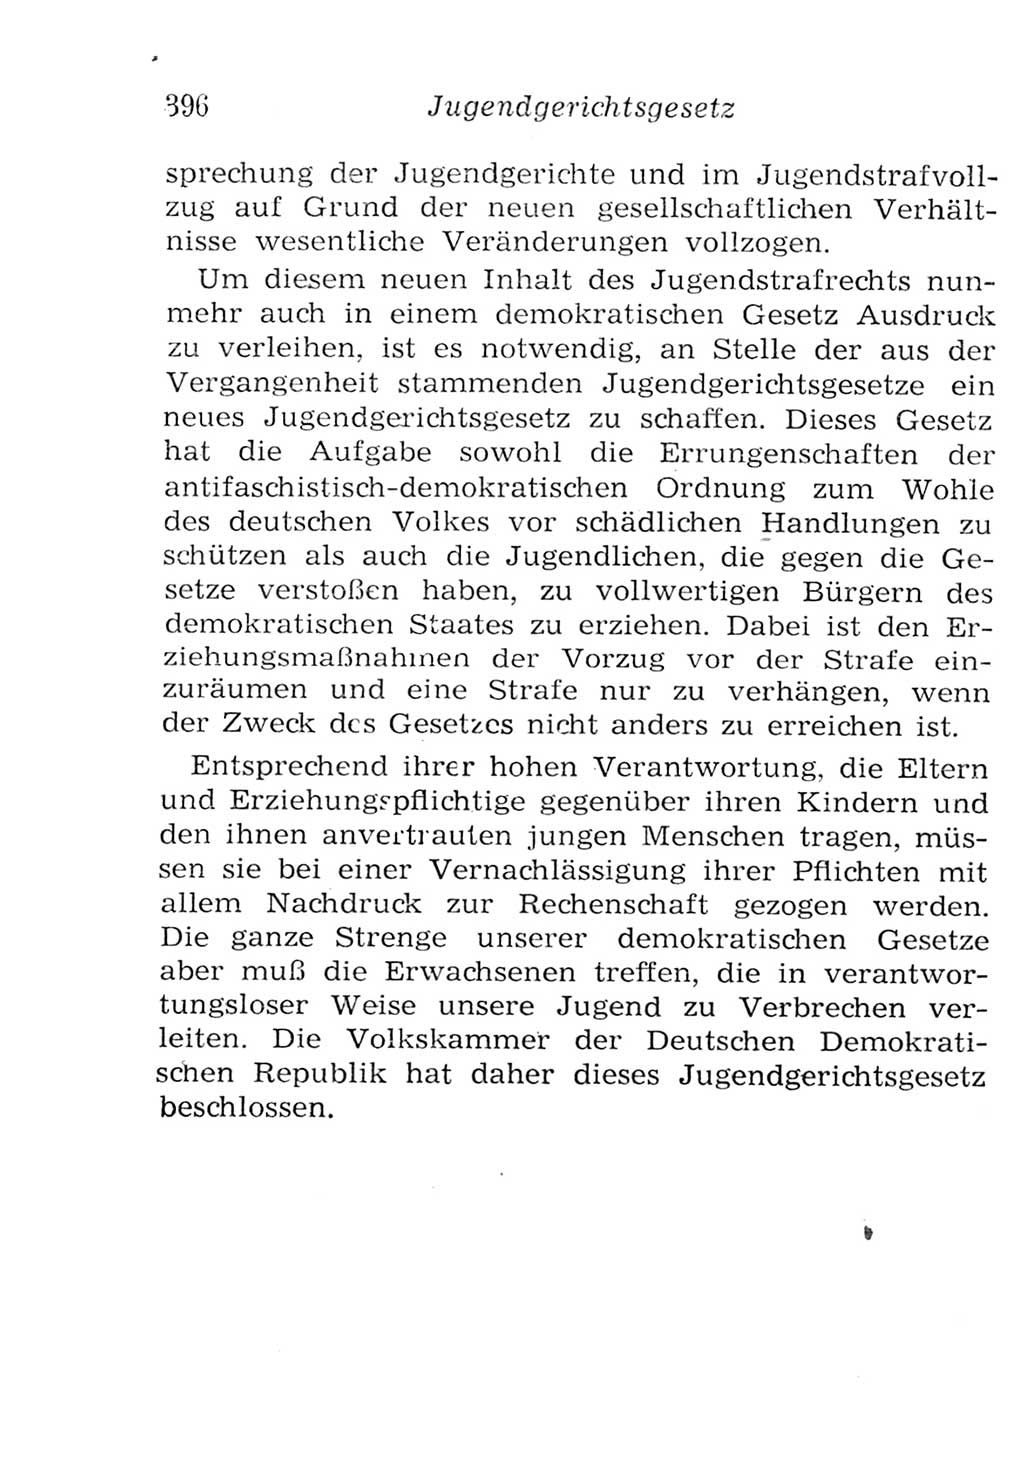 Strafgesetzbuch (StGB) und andere Strafgesetze [Deutsche Demokratische Republik (DDR)] 1957, Seite 396 (StGB Strafges. DDR 1957, S. 396)